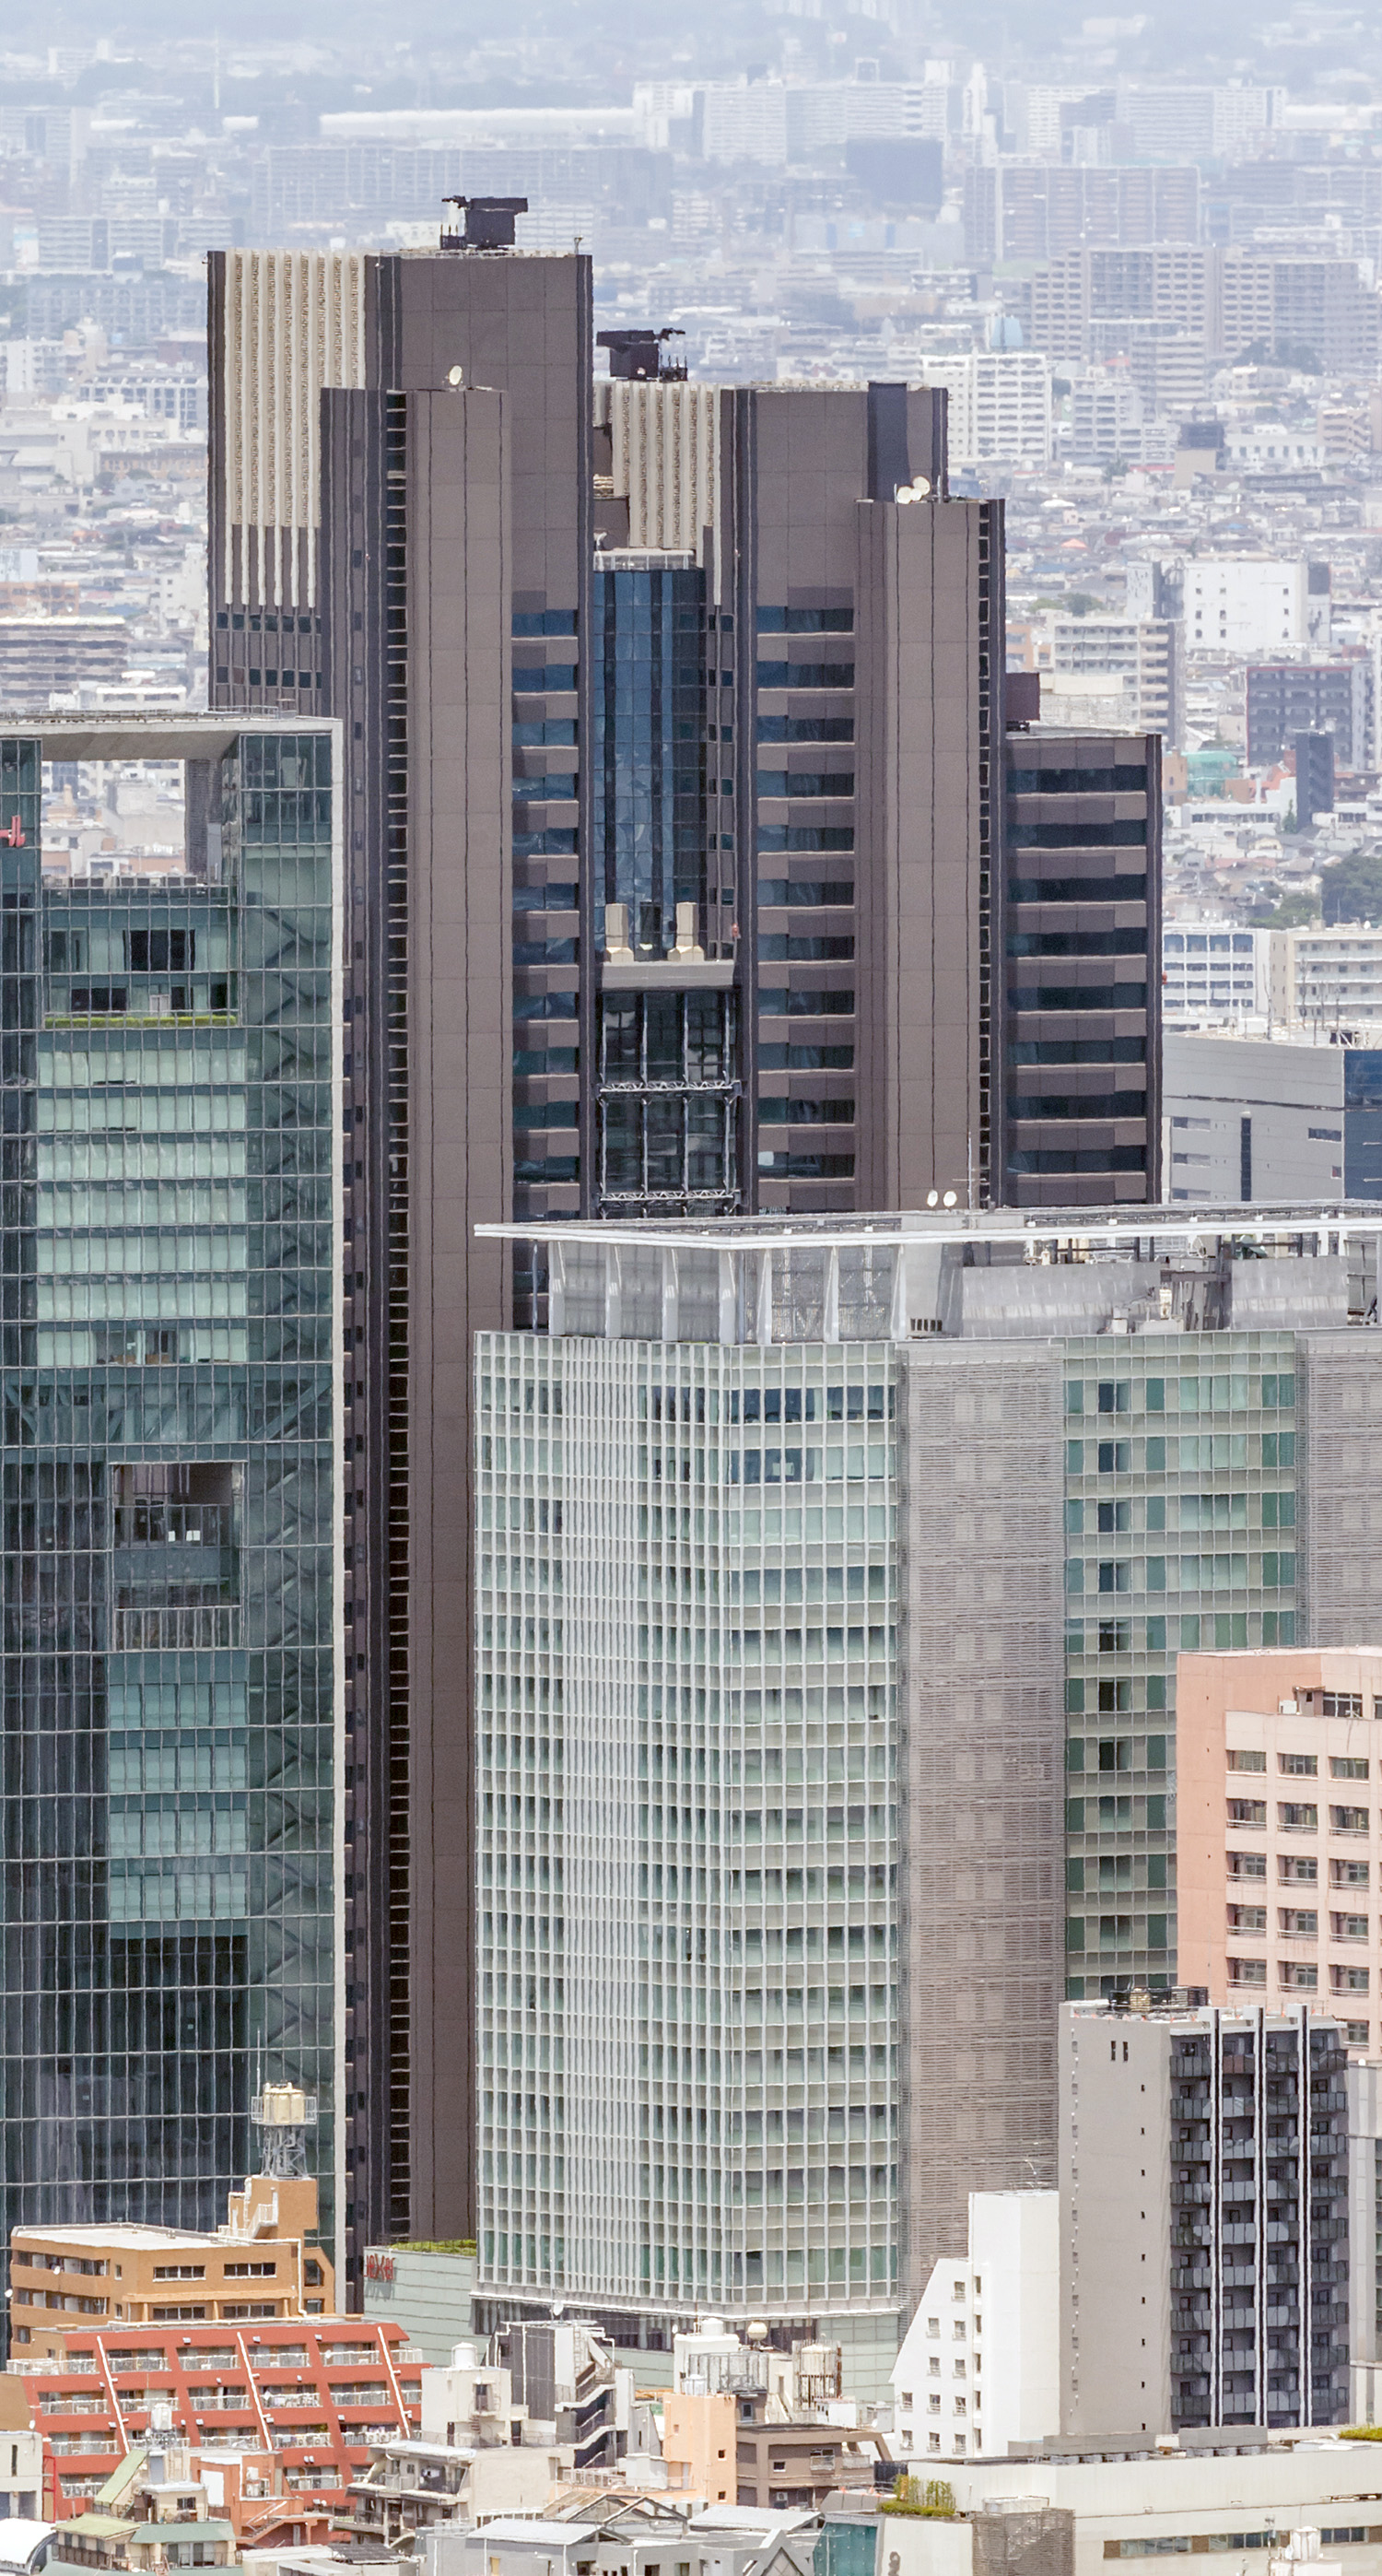 Shinjuku Maynds Tower, Tokyo - View from Shibuya Scramble Square. © Mathias Beinling